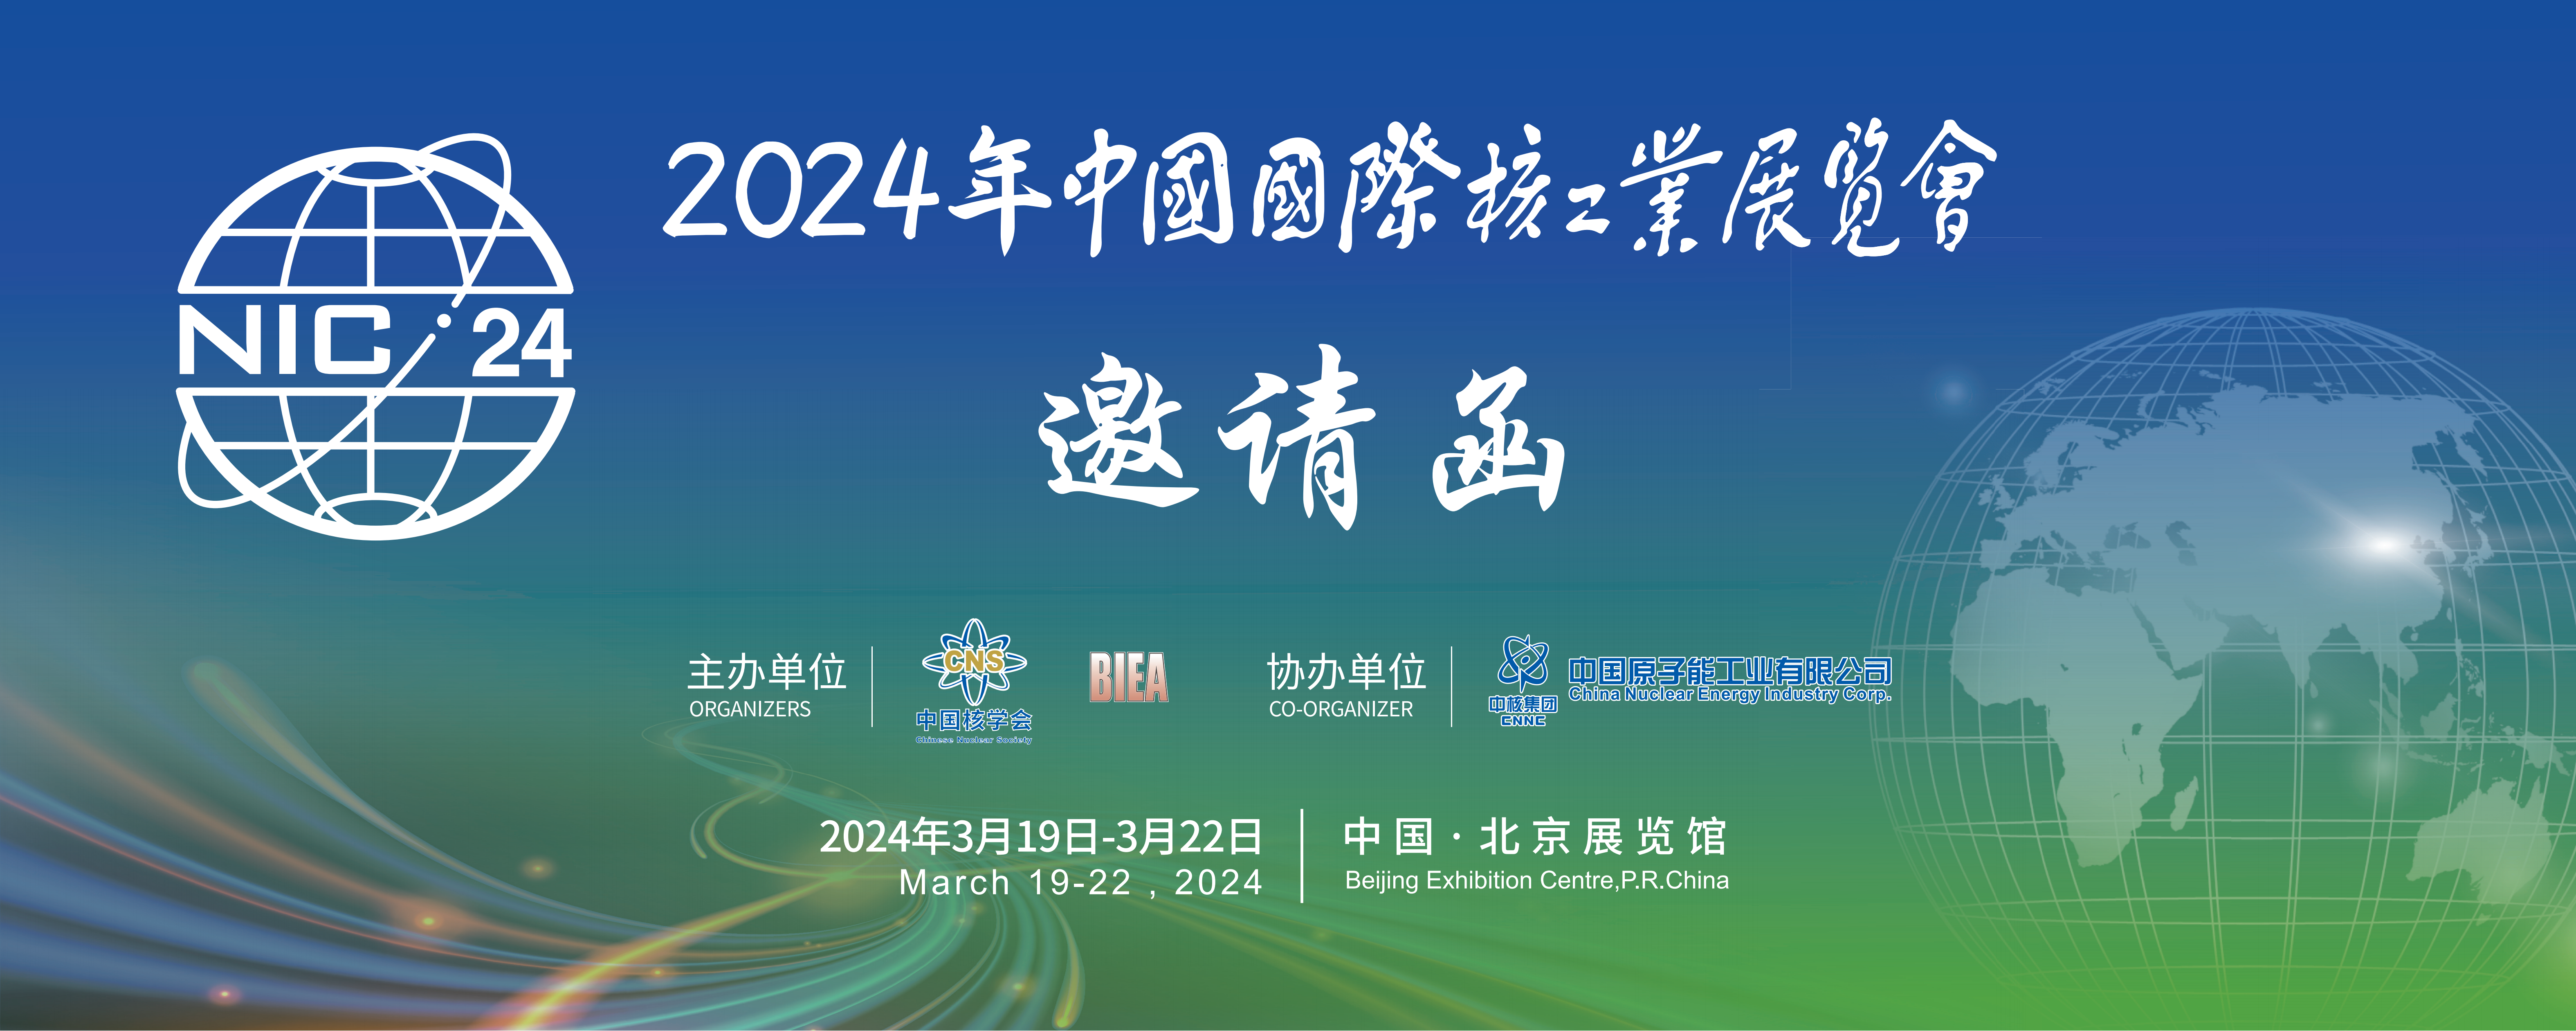 2024年中国国际核工业展览会-邀请函+观众预注册流程（中文）(1)_00.png